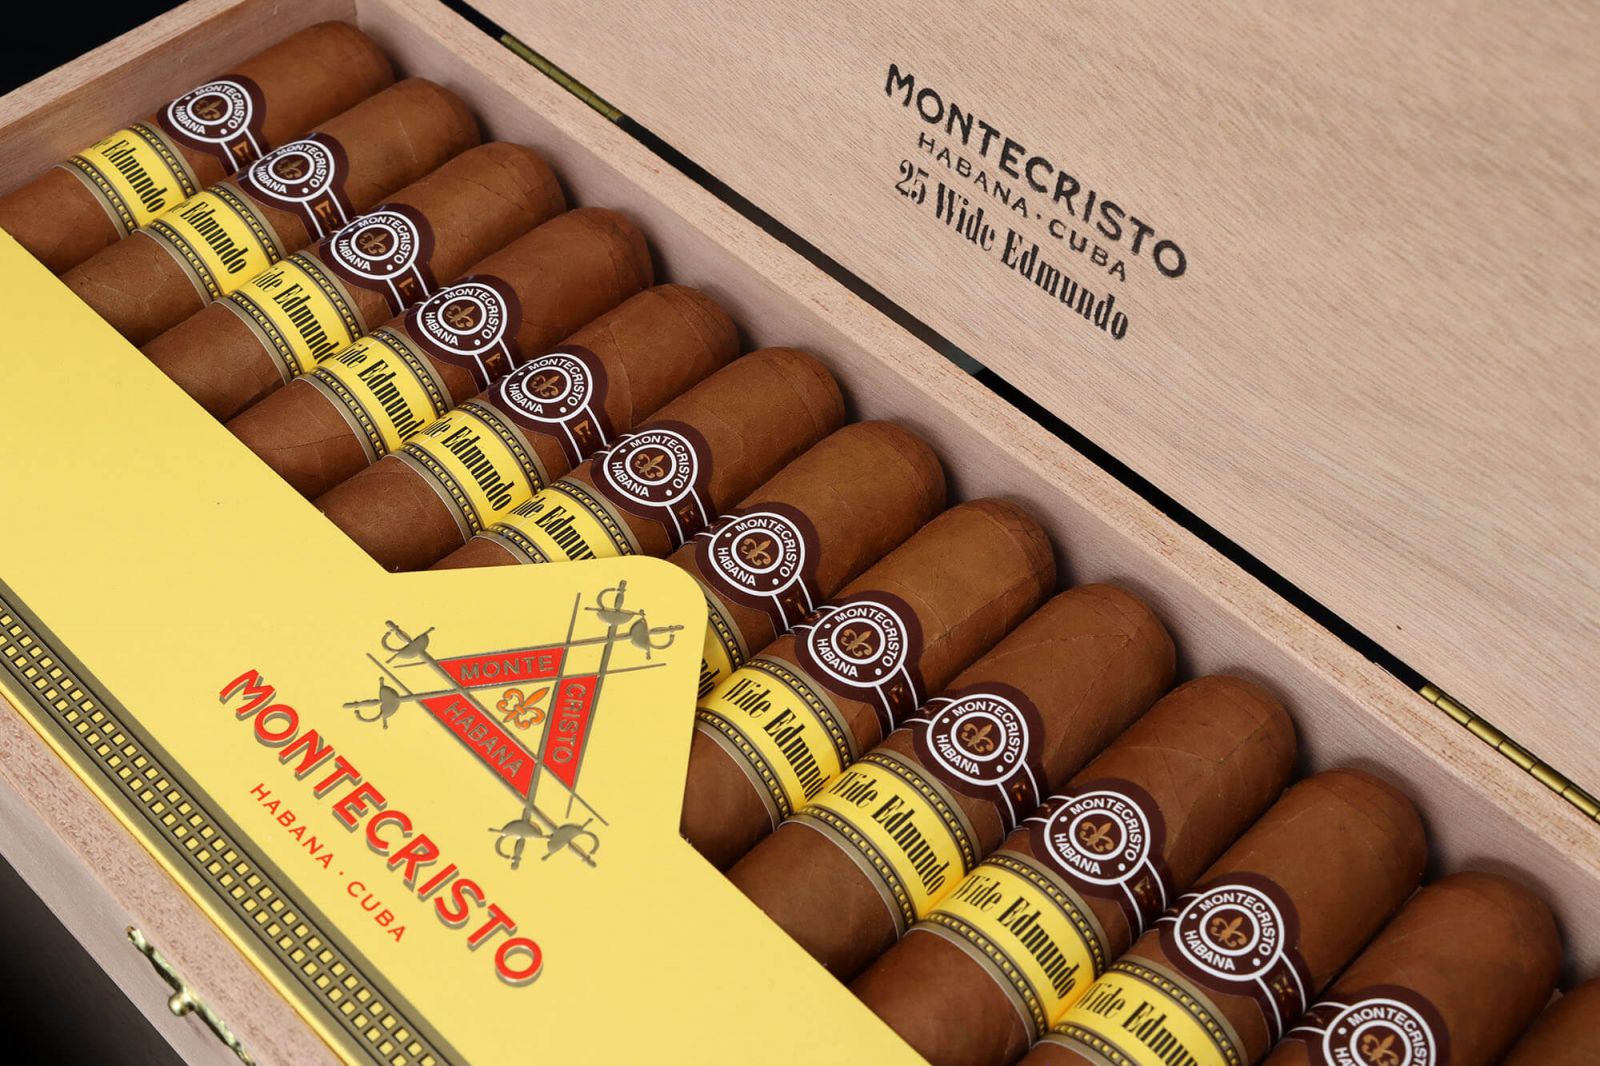 Xì gà Montecristo Wide Edmundo hộp gỗ 25 điếu hcm